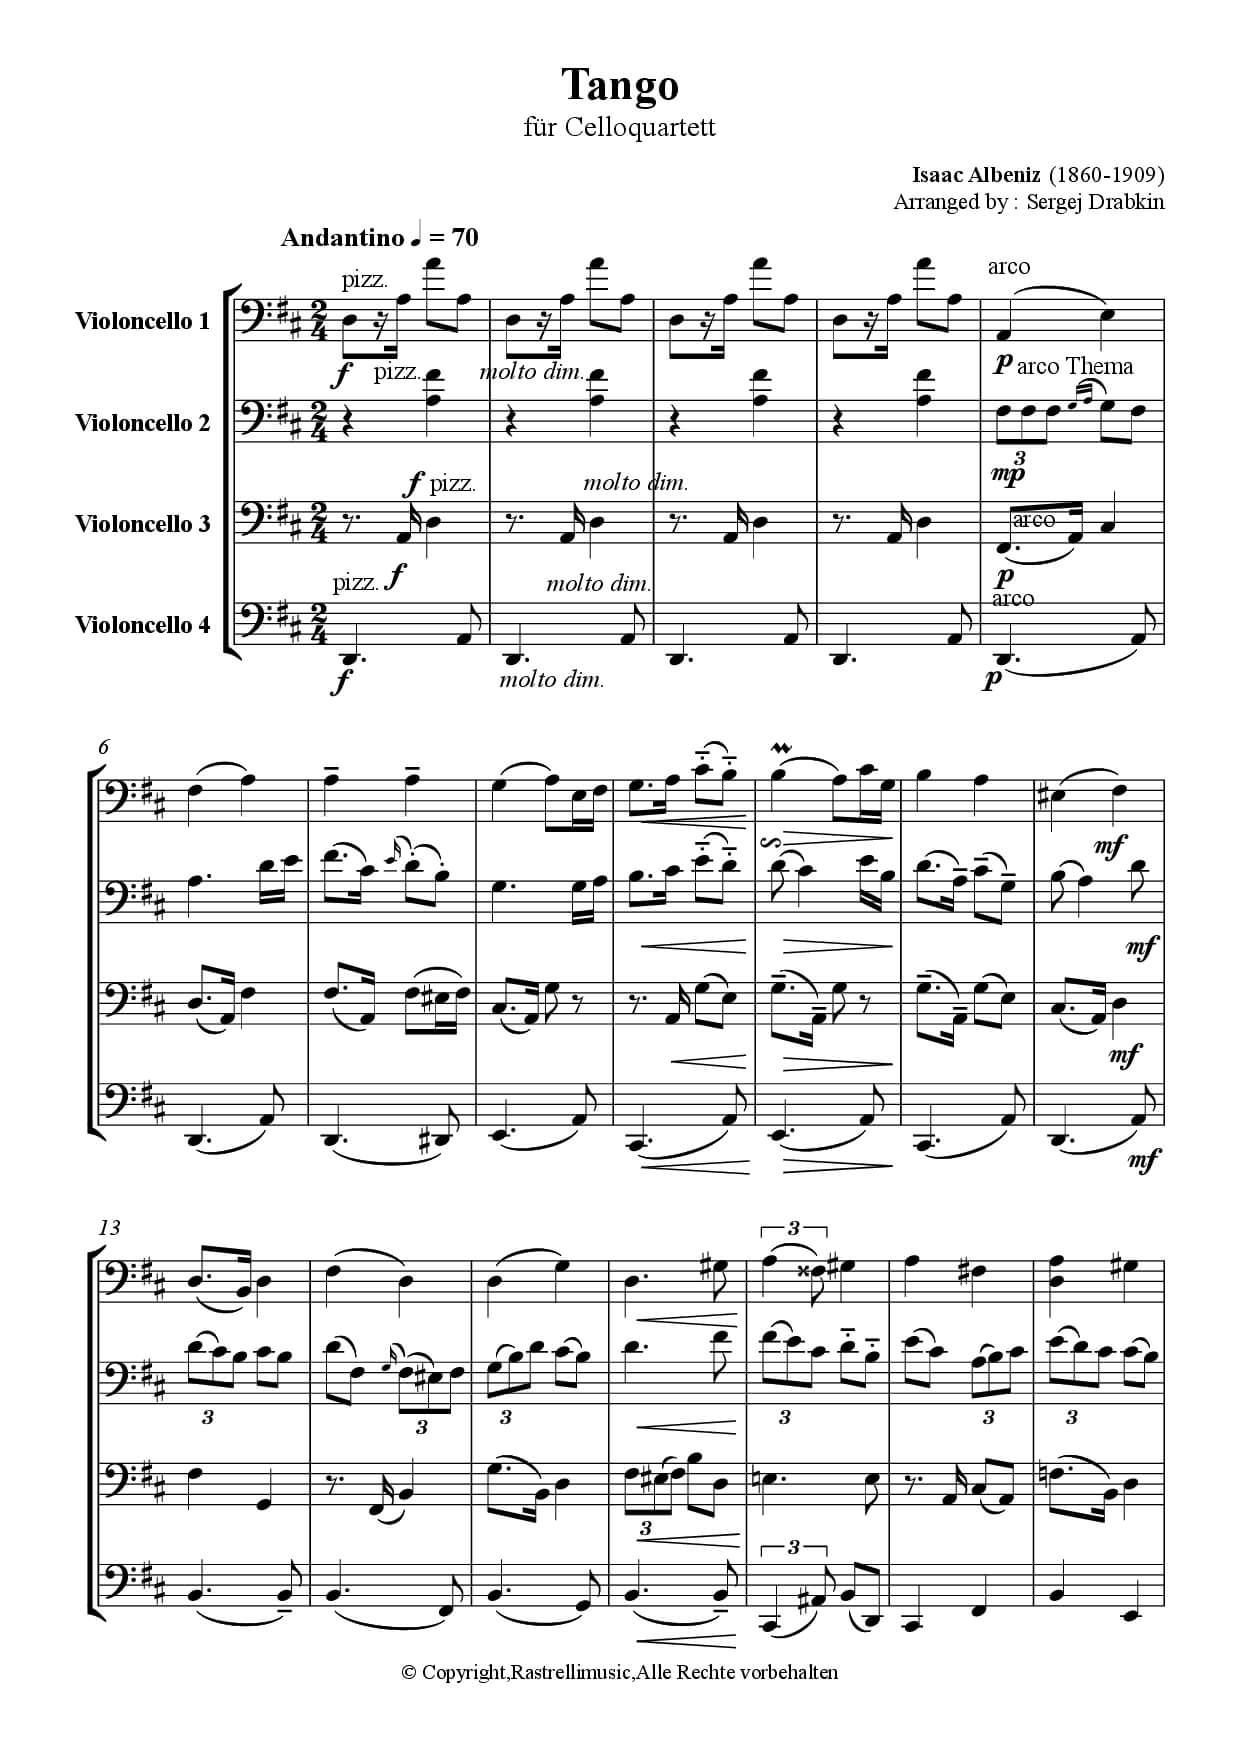 Musiknoten für Cello Quartett aus dem Stück Tango von Albeniz, Isaac